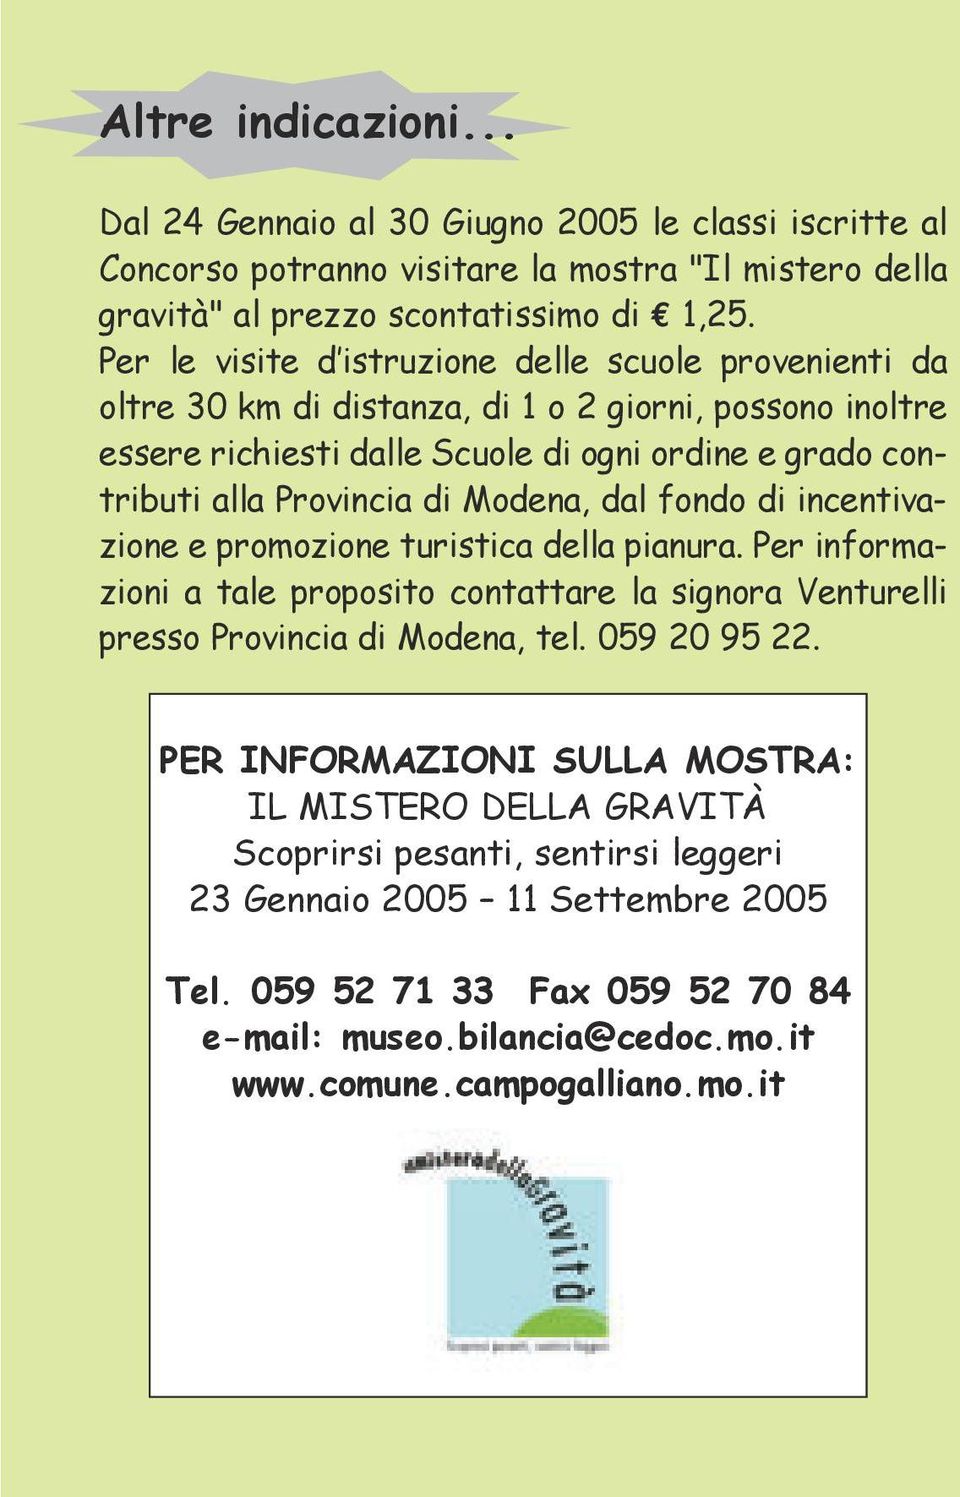 Modena, dal fondo di incentivazione e promozione turistica della pianura. Per informazioni a tale proposito contattare la signora Venturelli presso Provincia di Modena, tel. 059 20 95 22.